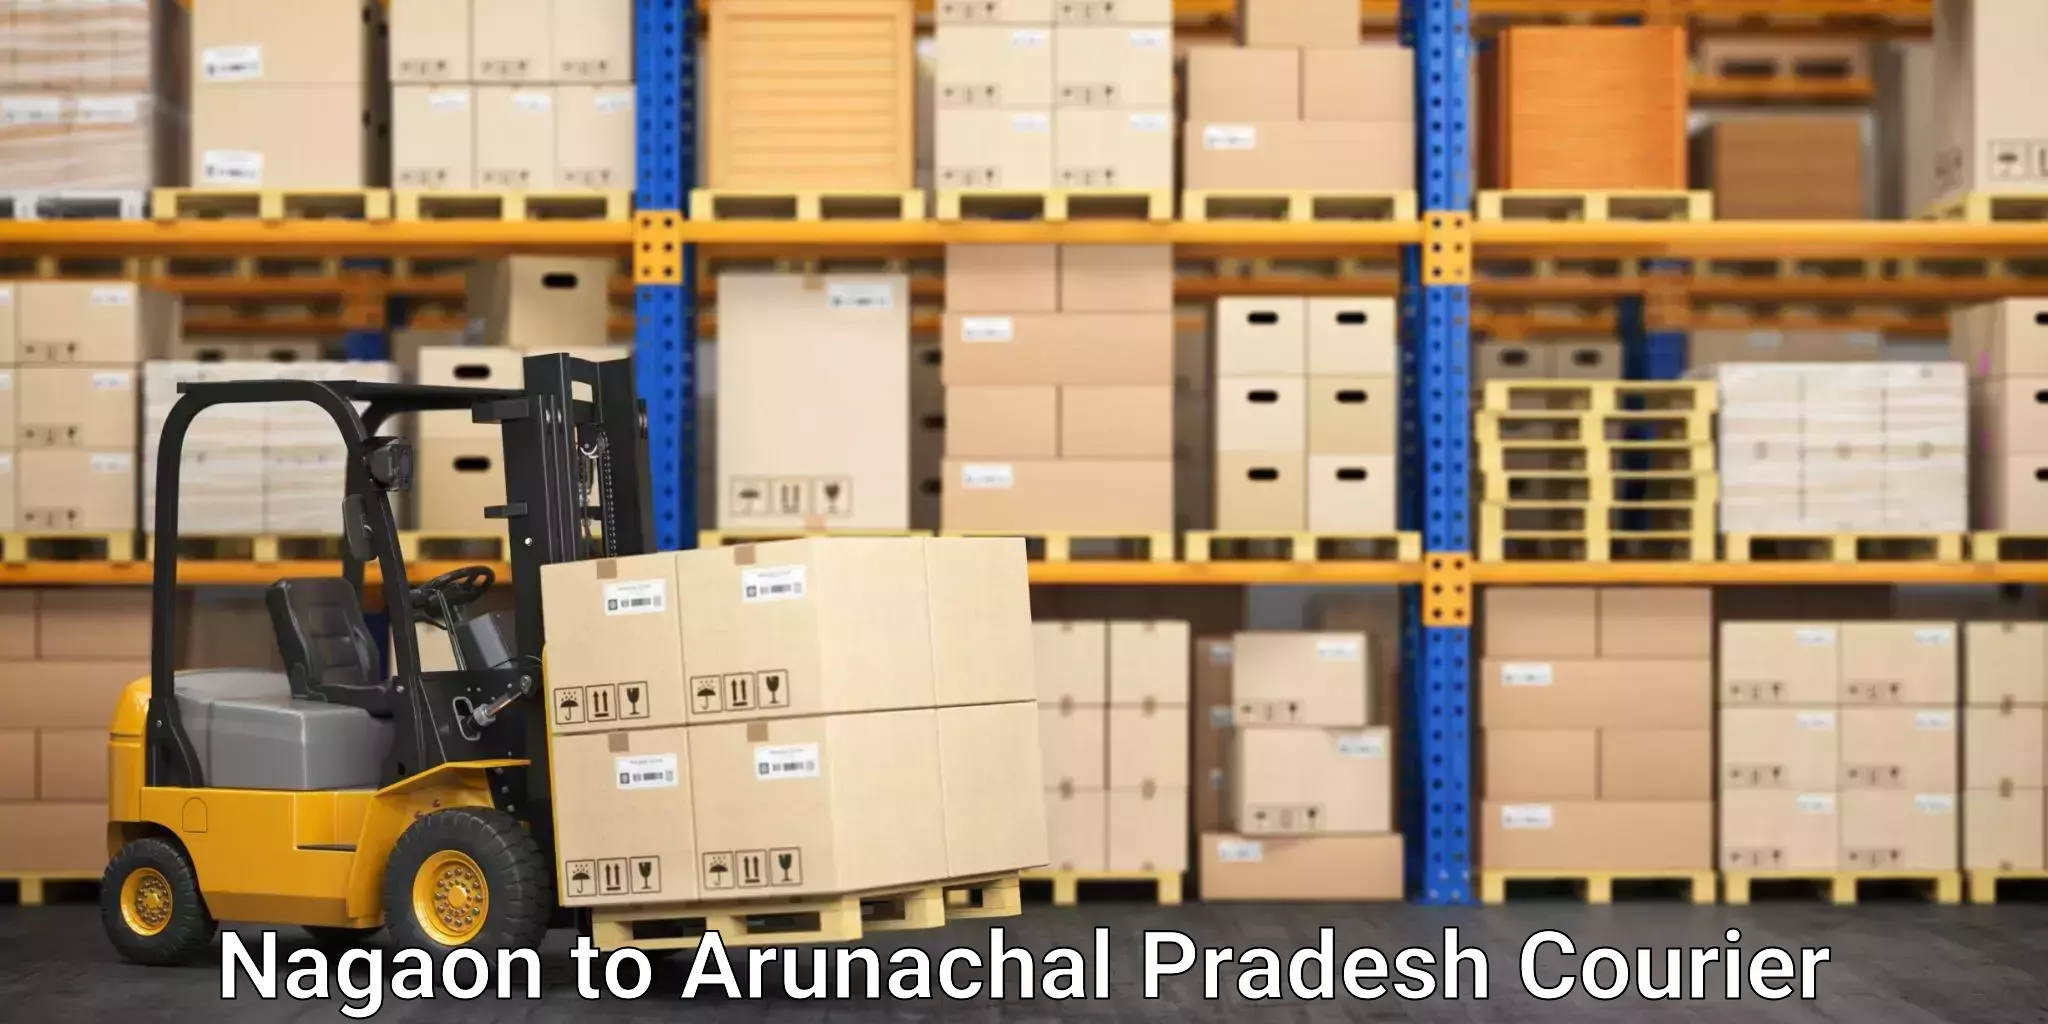 Premium courier services Nagaon to Arunachal Pradesh